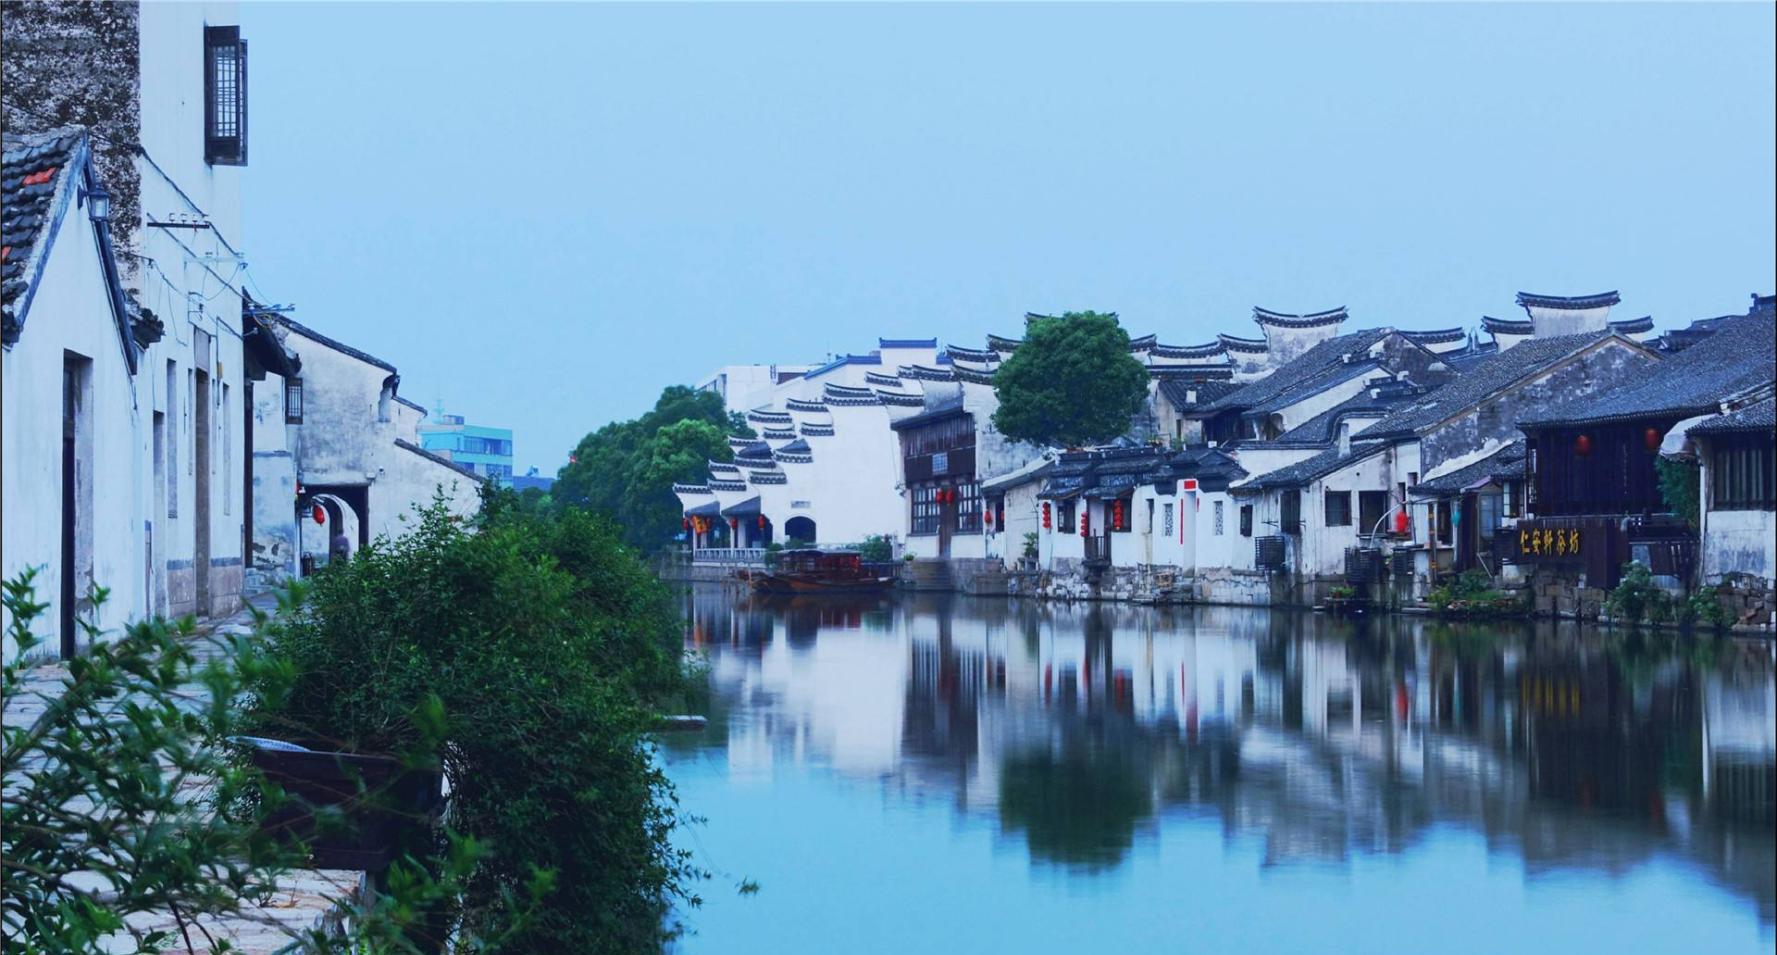 江苏省排名第一的经济强市, 现为二线城市